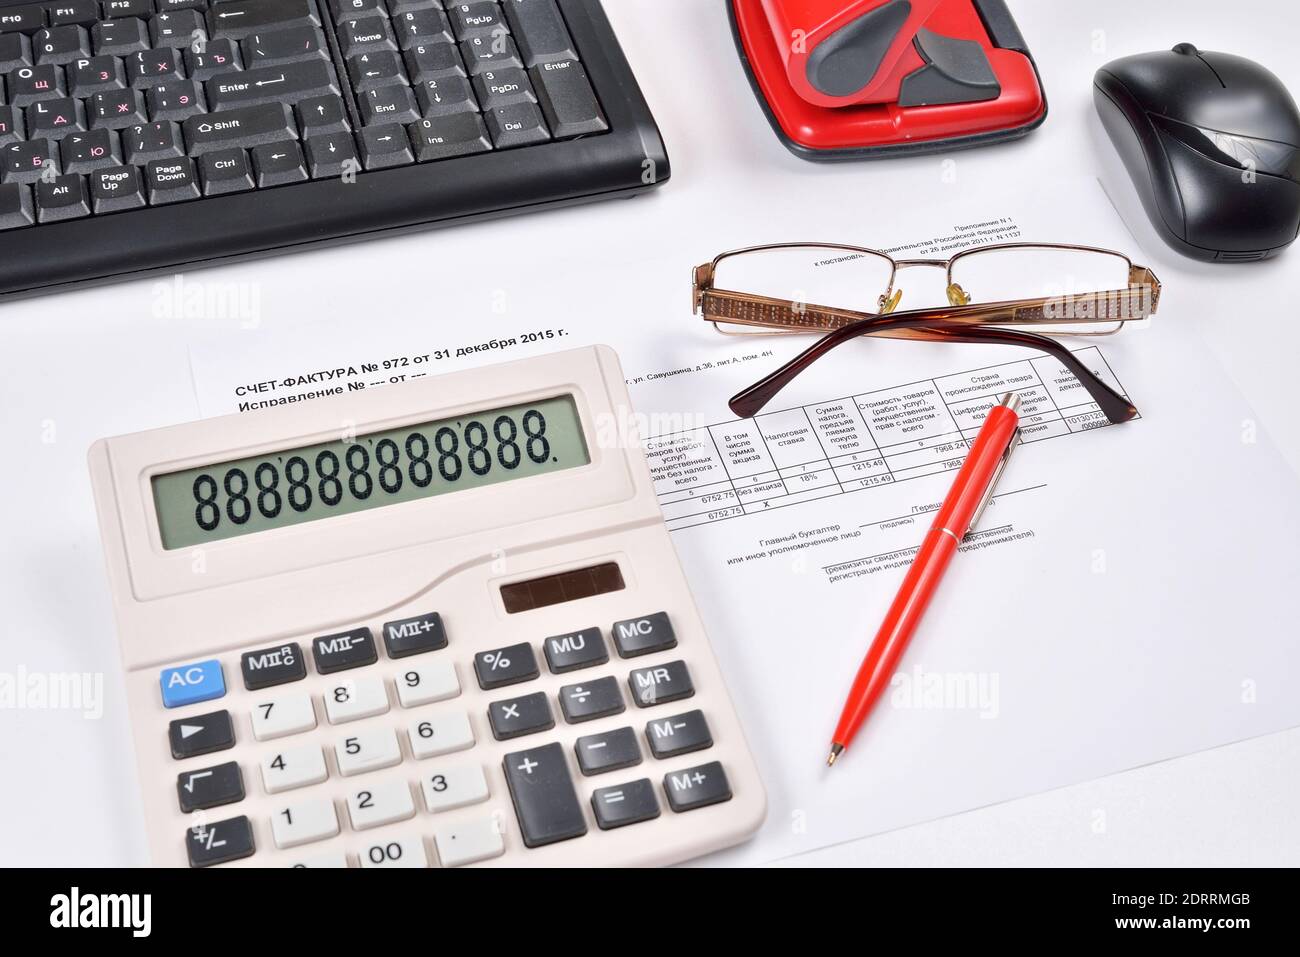 Tischbuchhalter: Rechnung, Tastatur, Rechner, Maus und roter Stift Büro- und Computerzubehör. Stockfoto